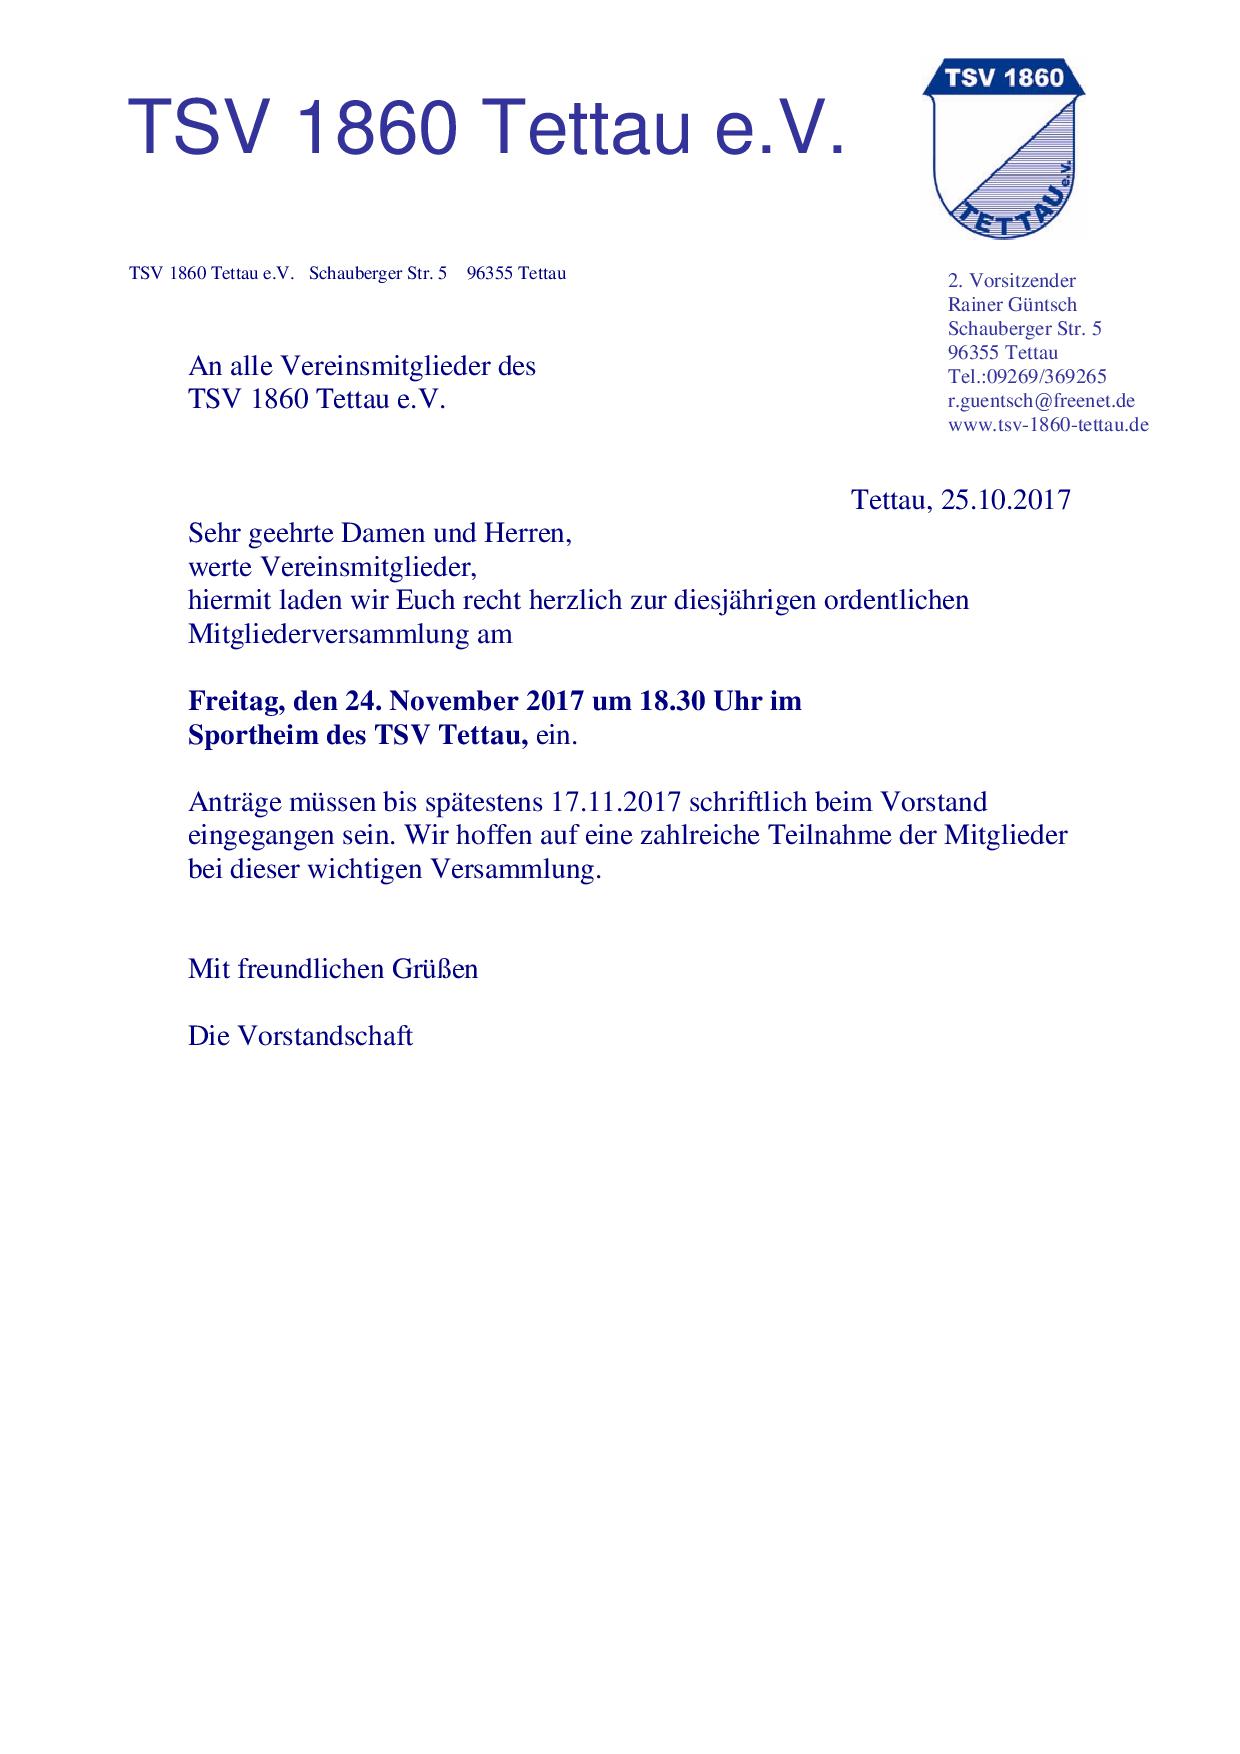 Einladung Jahreshauptversammlung 2017